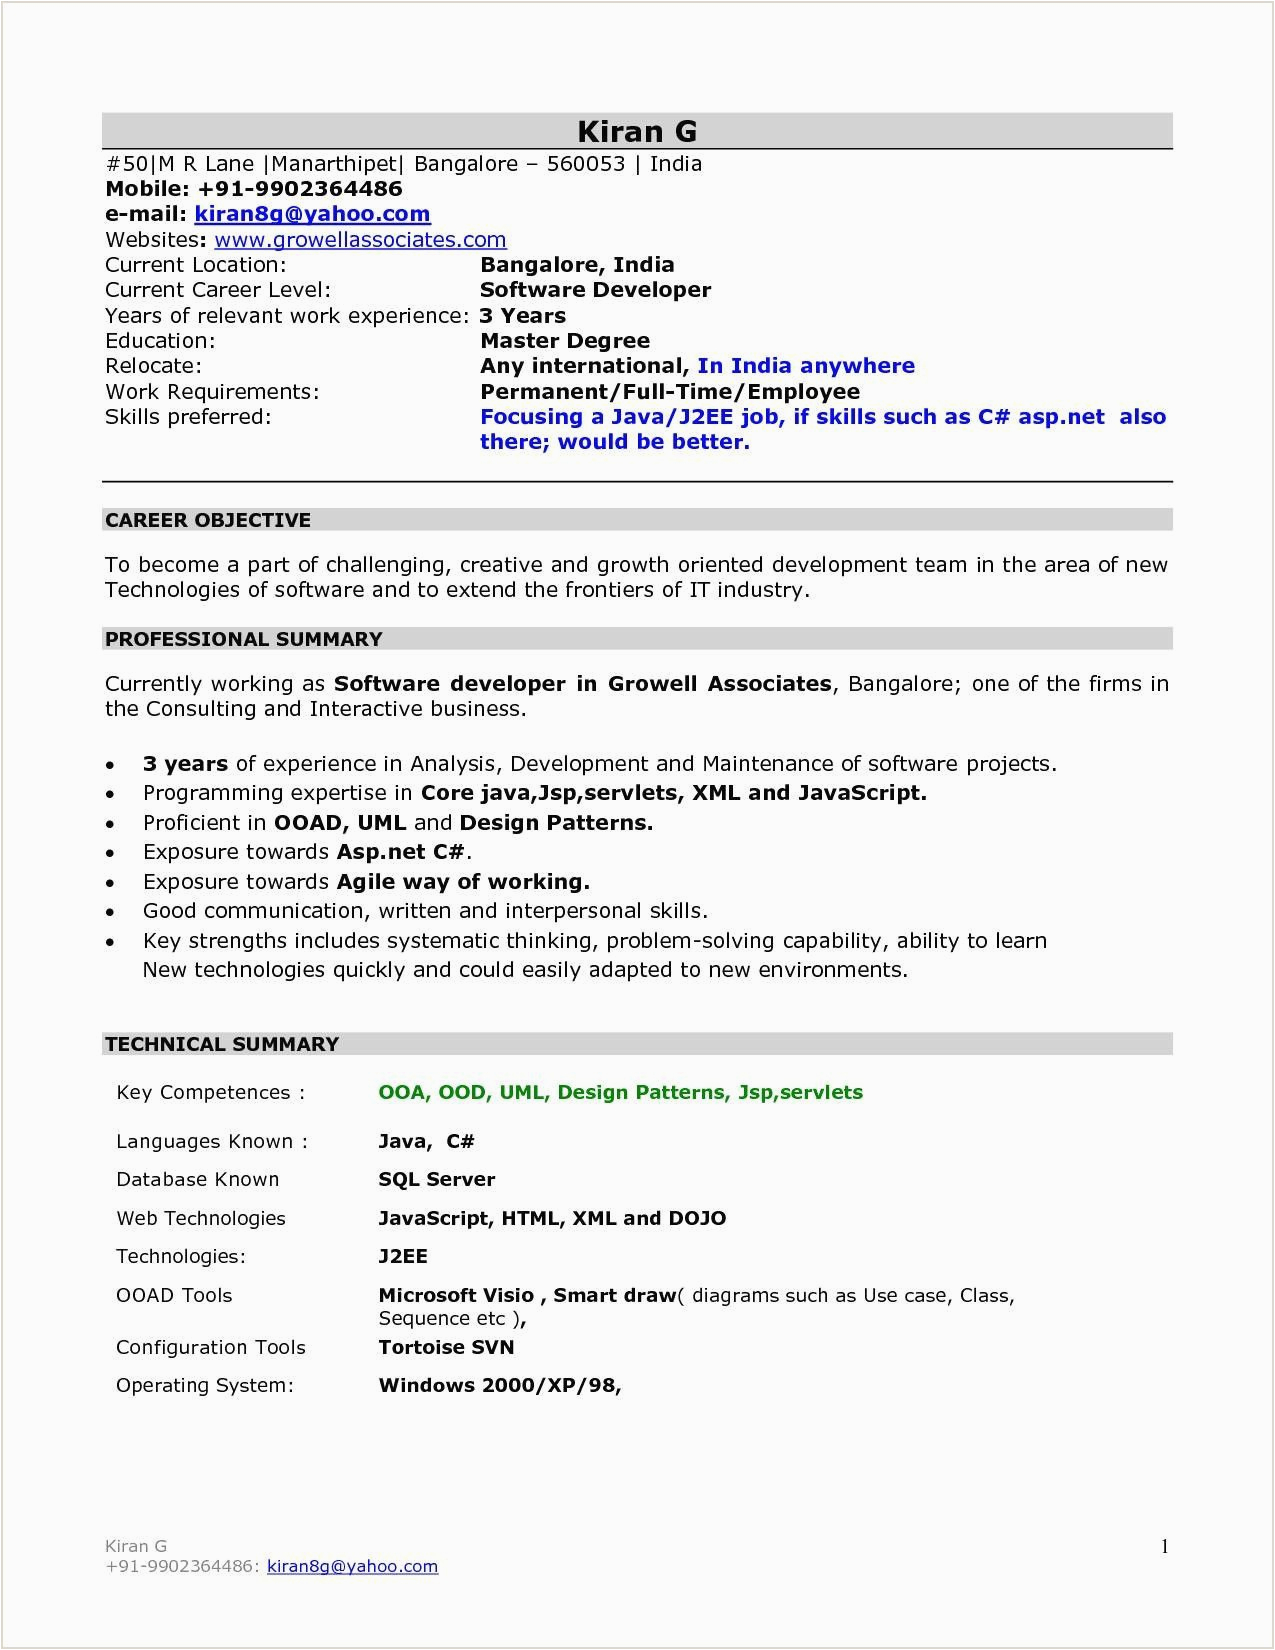 Sample Resume format for Mca Fresher Resume format for Mca Students Freshers Best Resume Examples